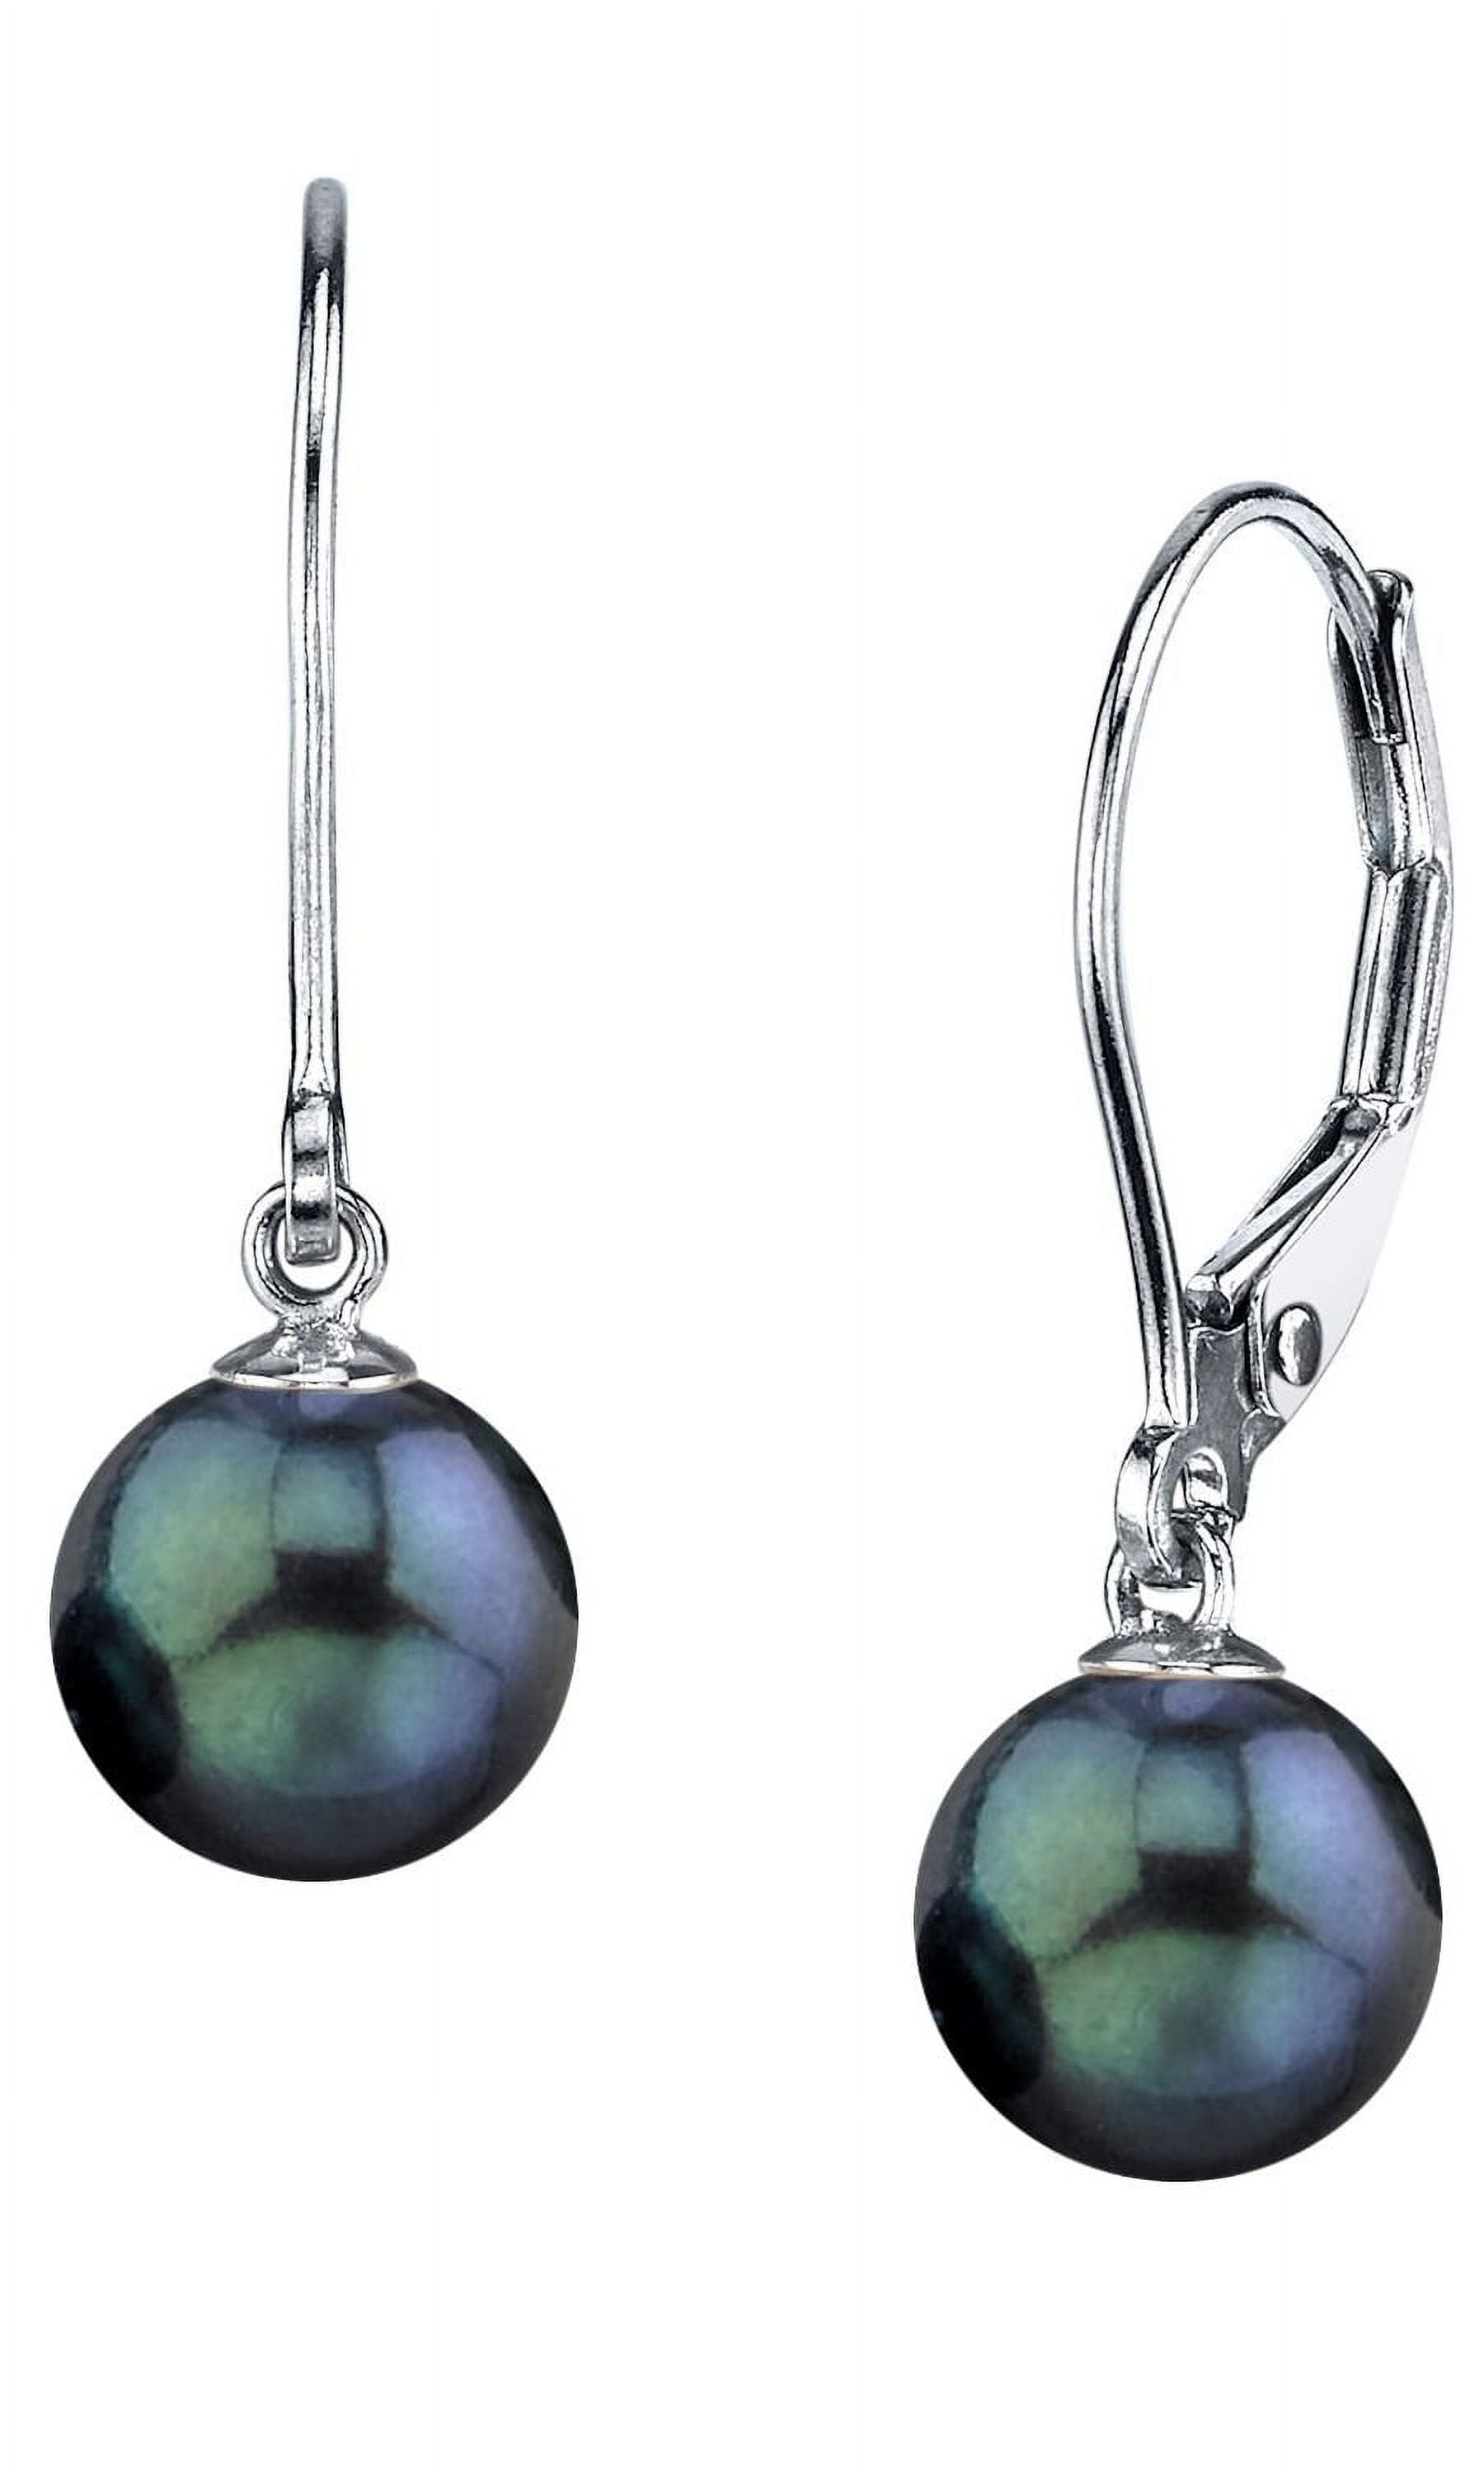 Black Onyx and Pearl Earrings – Victoria Six